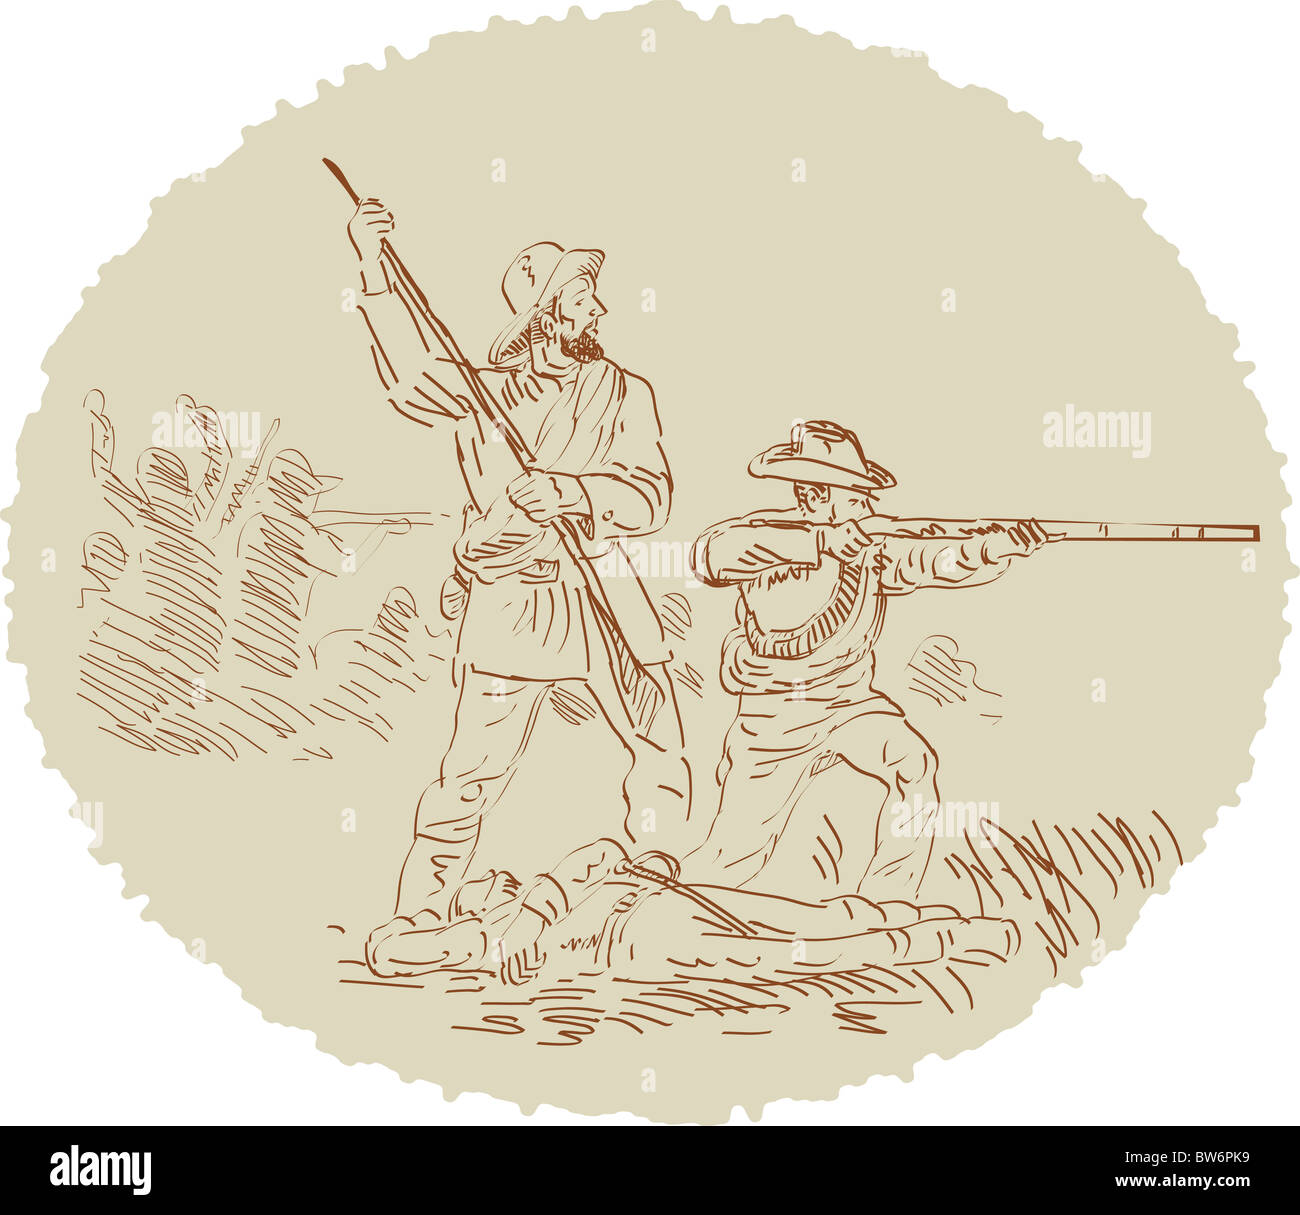 Illustration de la guerre civile de prise de vue du côté des soldats croquis sur fond blanc style rétro Banque D'Images